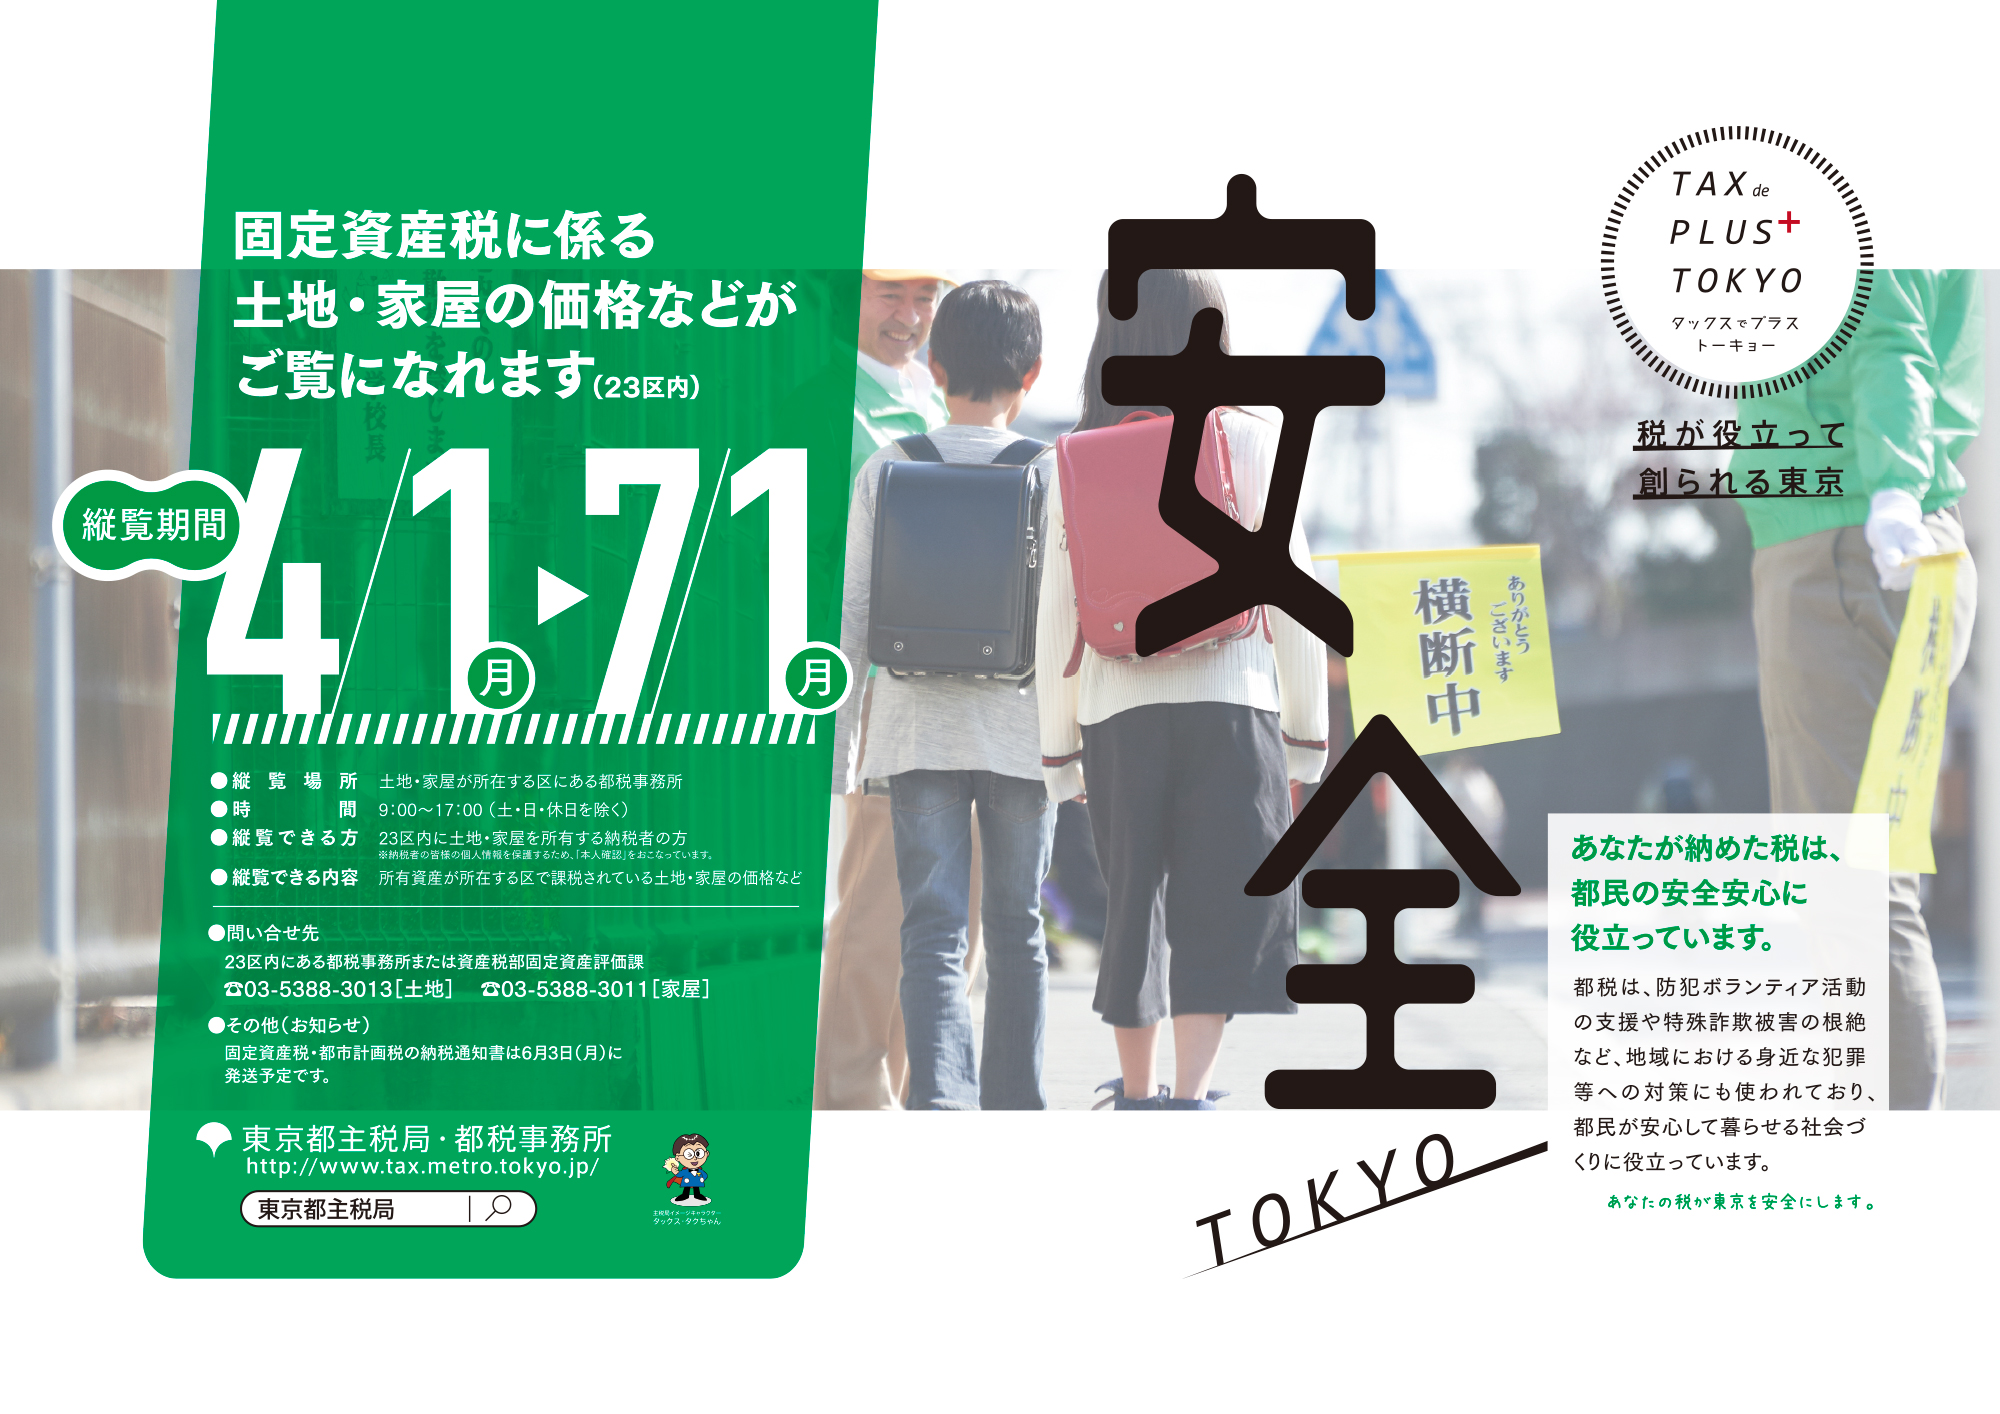 平成31年度 令和元年度 インターネットポスター展 東京都主税局